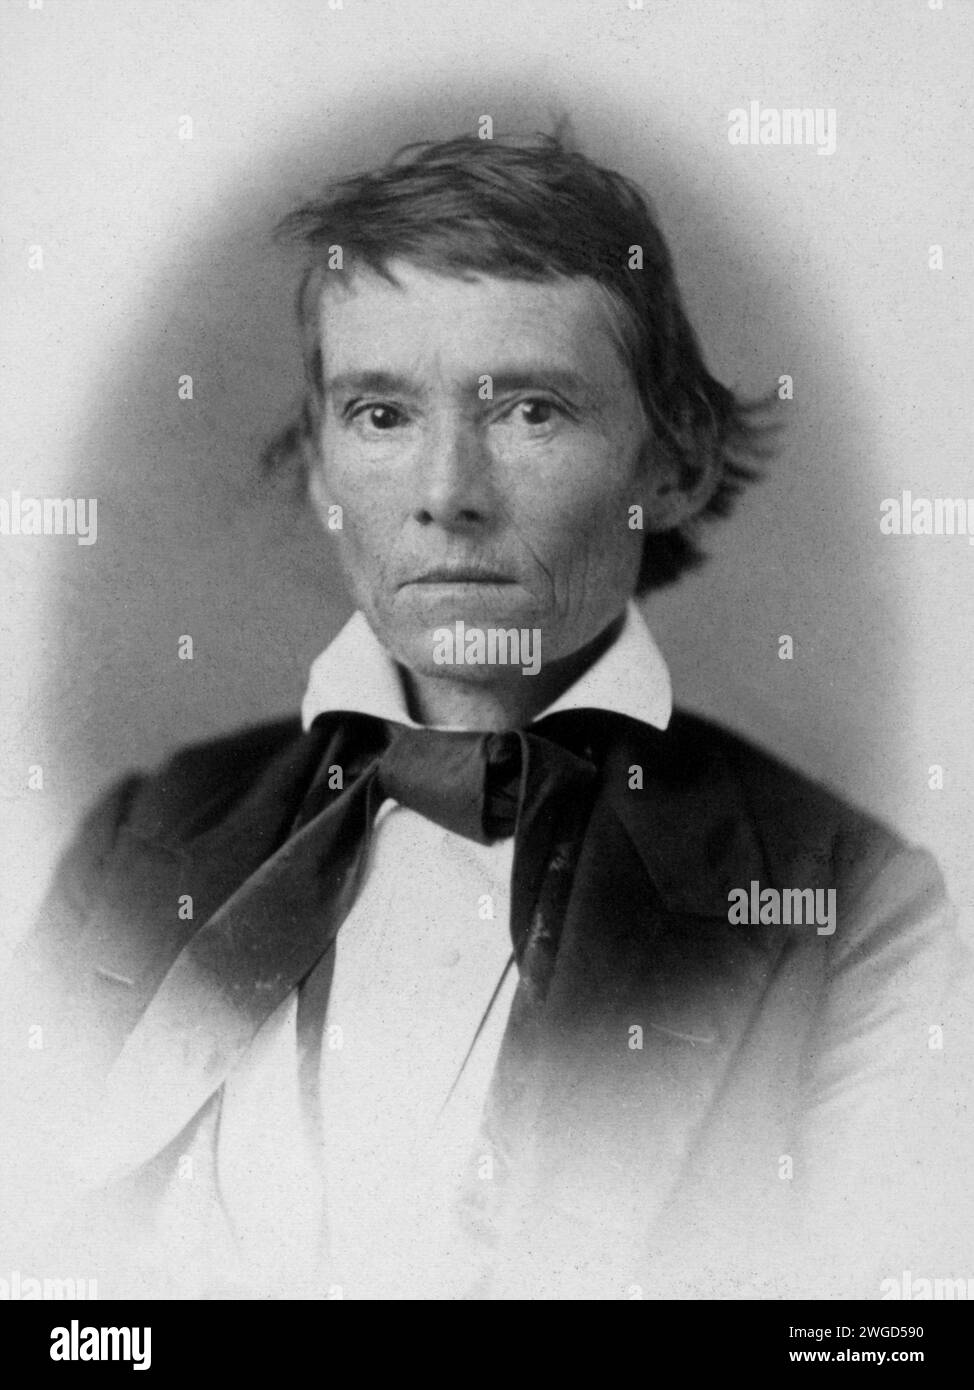 Alexander H. Stephens, représentant de la Géorgie, trente-cinquième Congrès, portrait en demi-longueur. Année : 1859. Photographie de Julian Vannerson. Banque D'Images